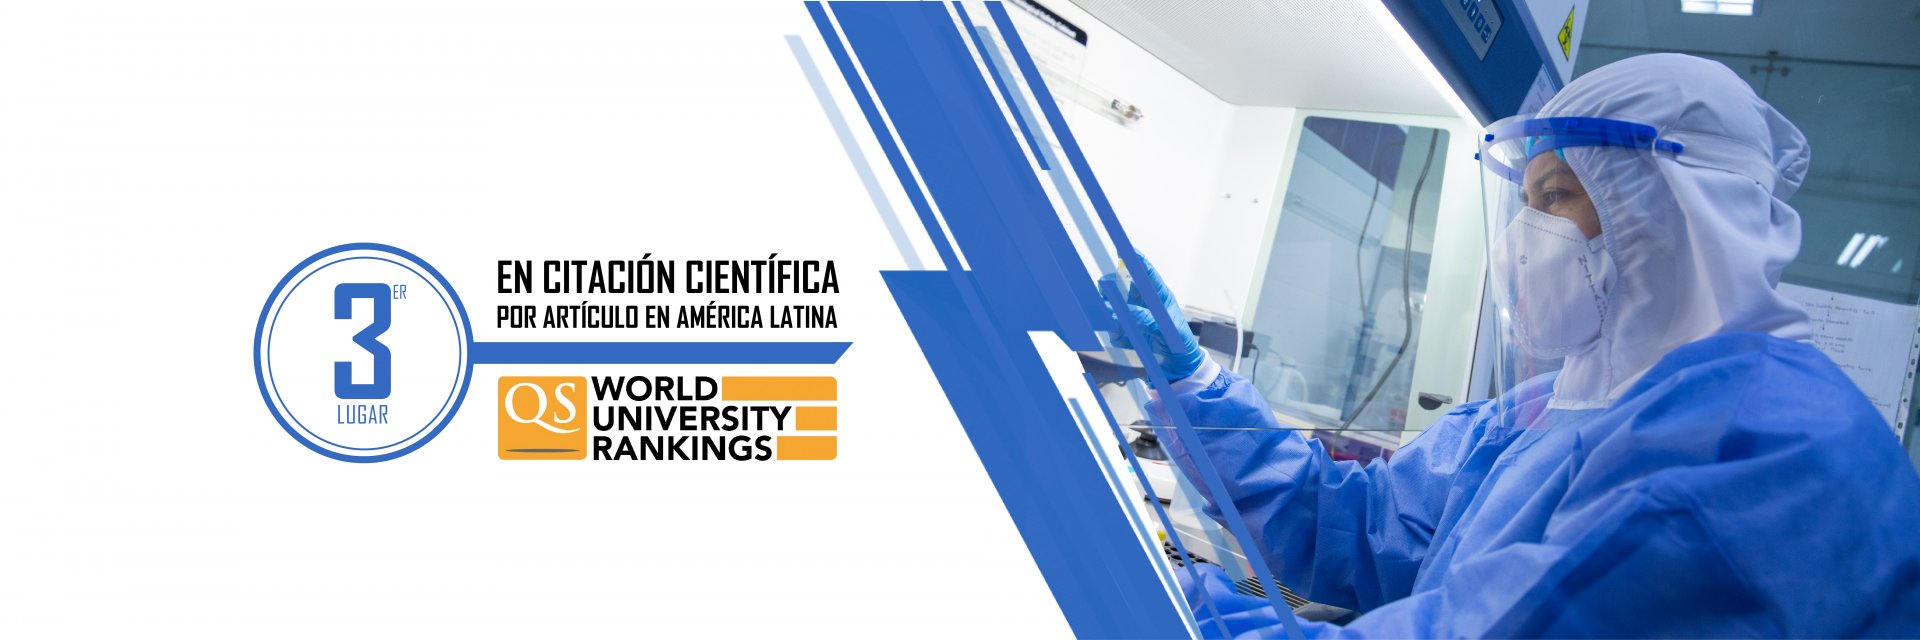 La UDES entre las universidades con mayor número de citaciones científicas por artículo en América Latina